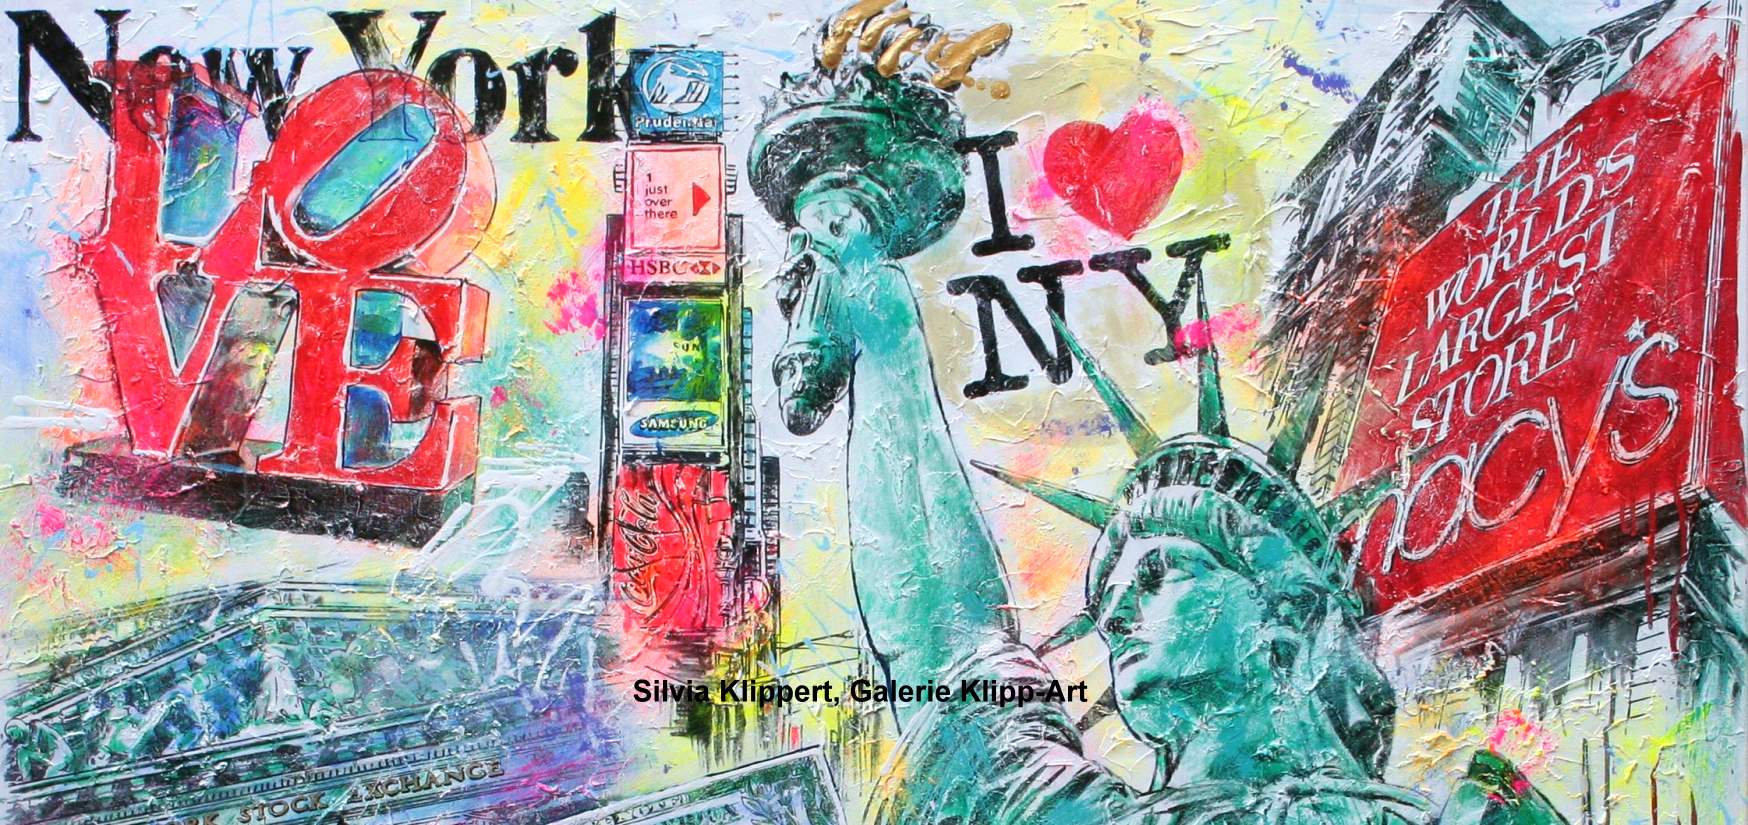 USA New York Pop Art Gemlde painting leinwand Kuba Duesseldorf